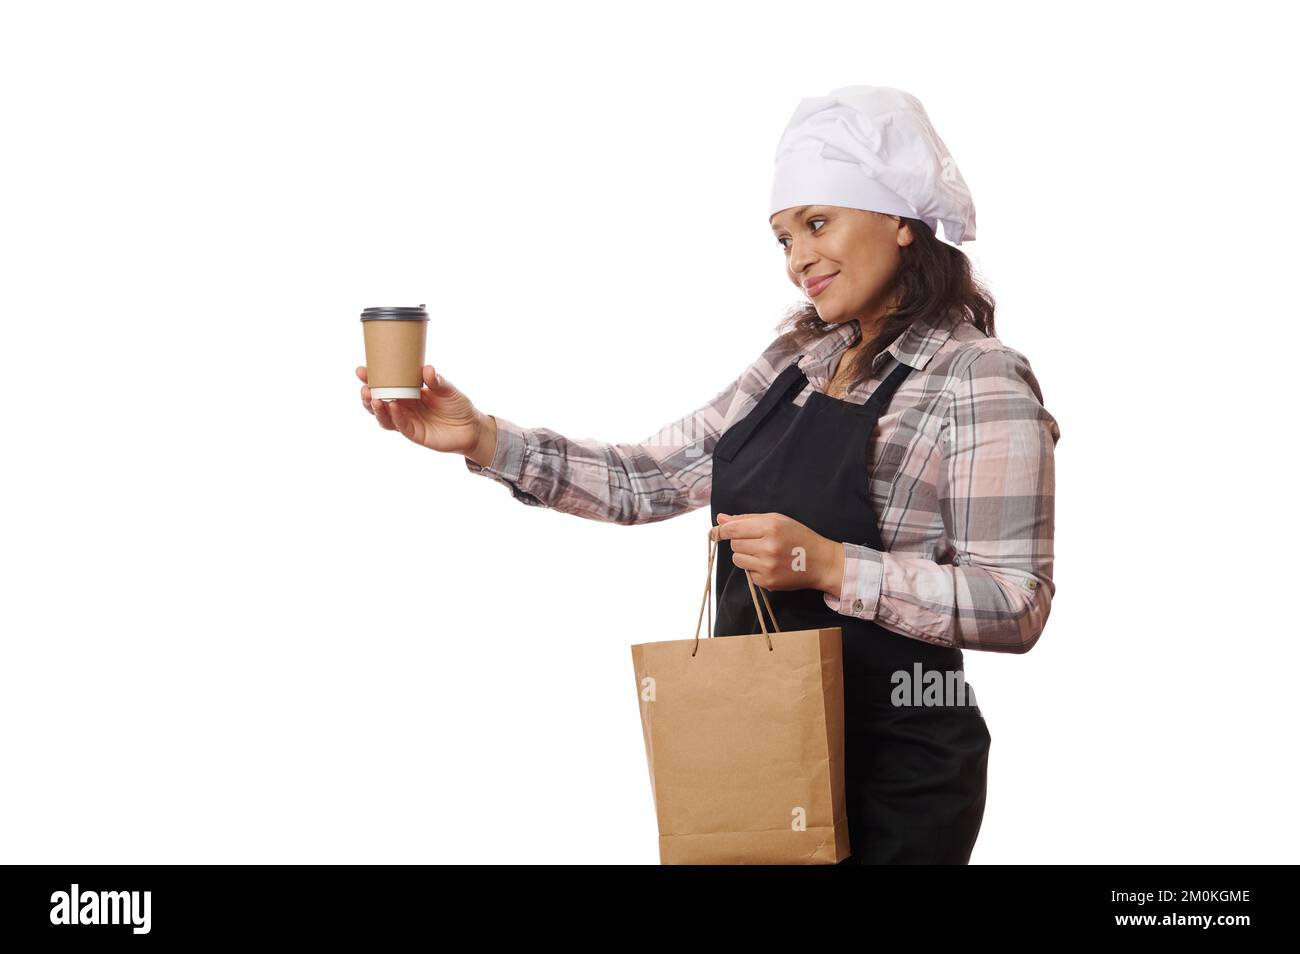 Hübsche Kellnerin mit Kochmütze und Schürze, verkauft heißen Kaffee zum Mitnehmen in Einweg-Pappbecher, weißer Hintergrund Stockfoto